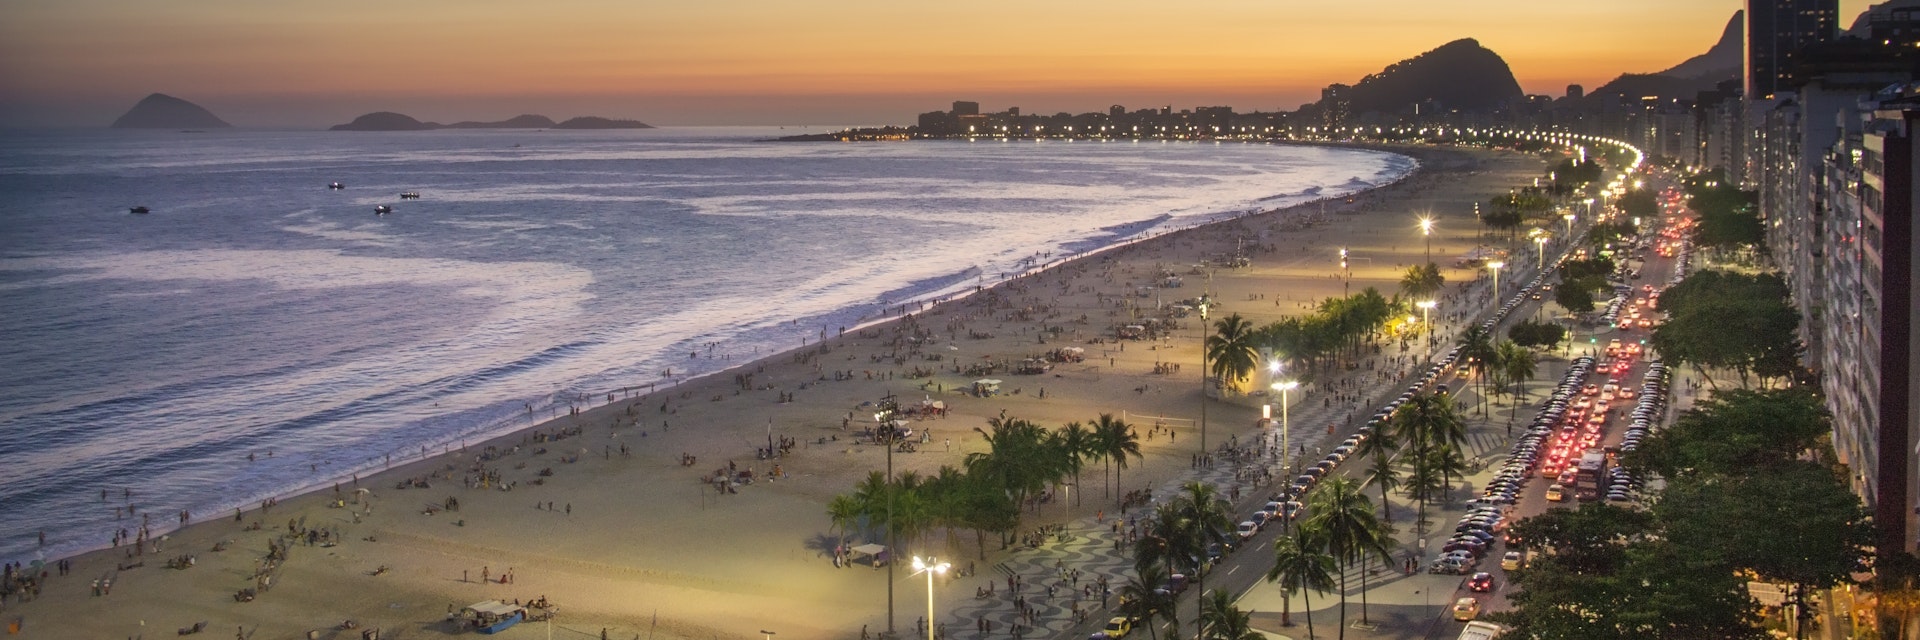 "Brazil, Rio de Janeiro, View of Copacabana beach at sunset"